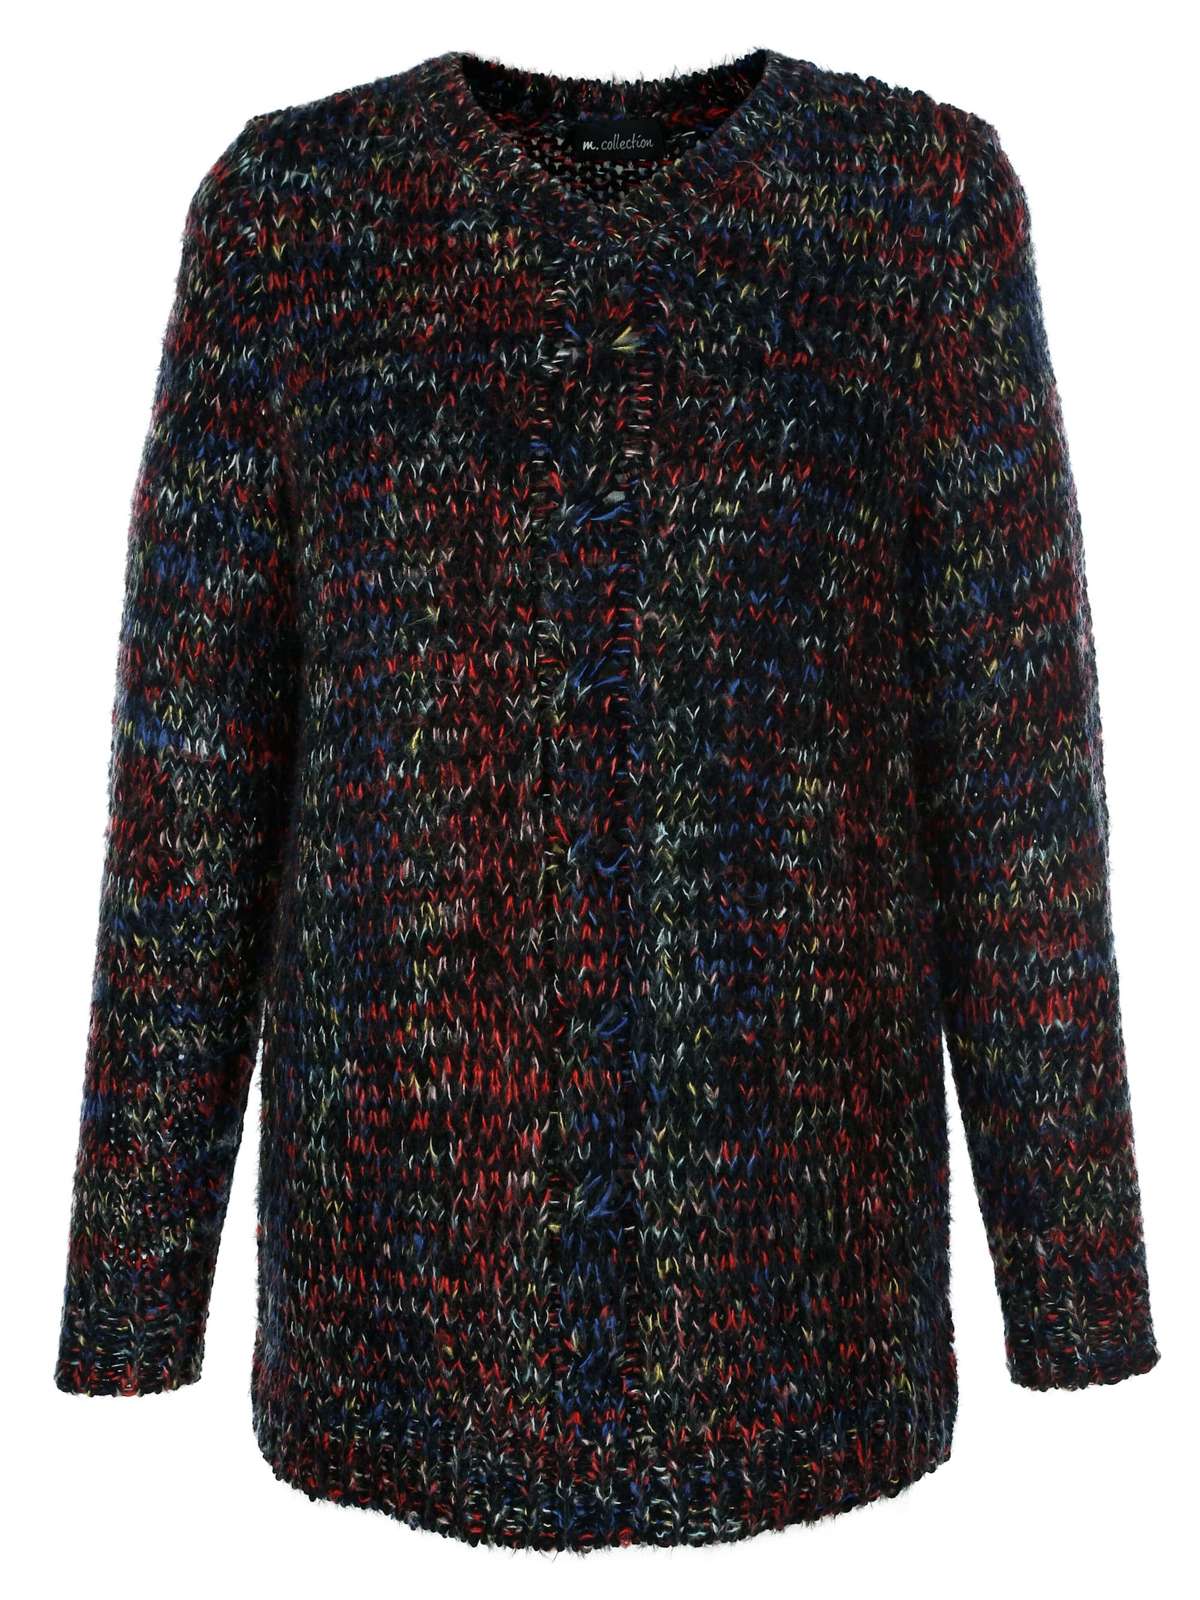 Вязаный свитер-свитер из разноцветной пряжи.